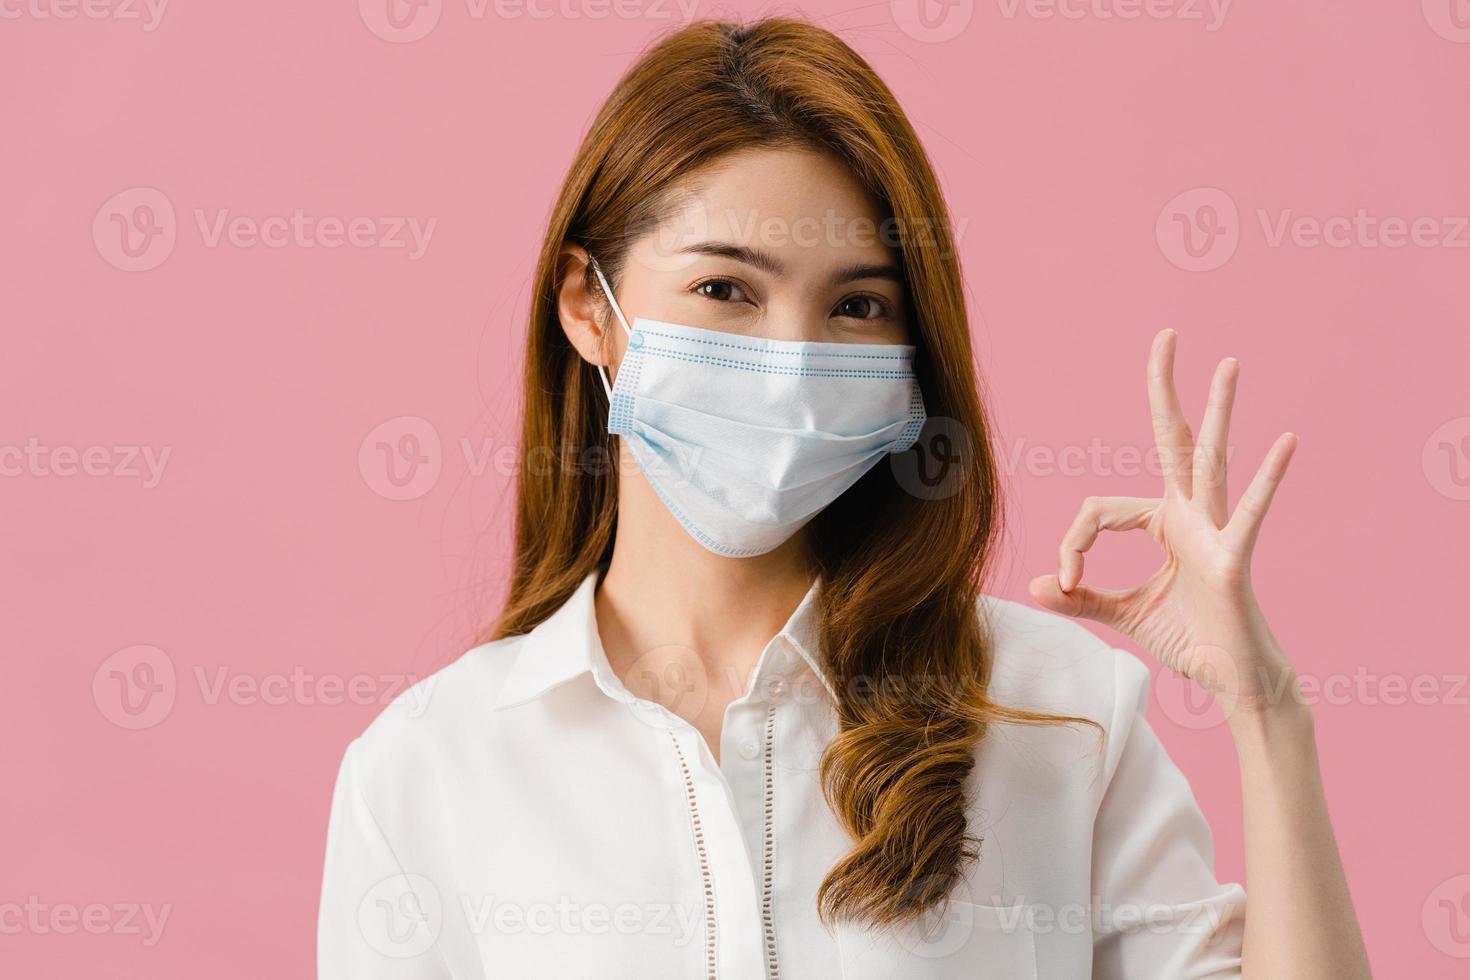 jeune fille asiatique portant un masque médical faisant des gestes signe ok avec vêtue d'un tissu décontracté et regarde la caméra isolée sur fond rose. auto-isolement, distanciation sociale, quarantaine pour le virus corona. photo